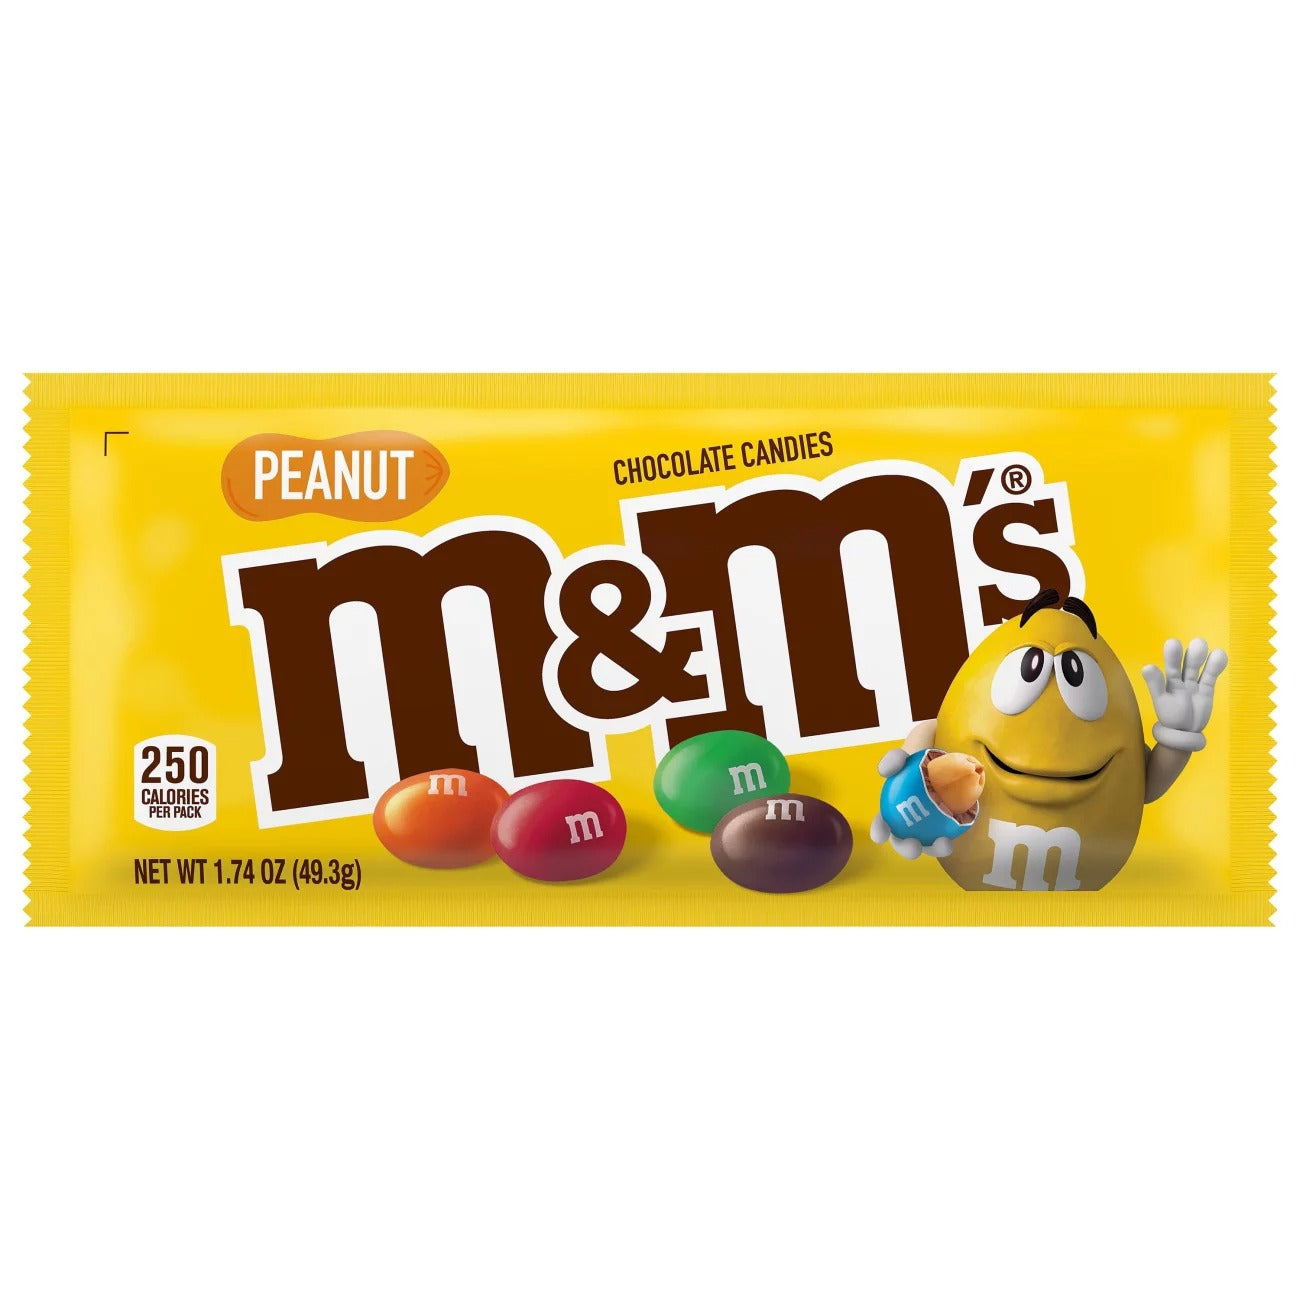 Peanut M&M